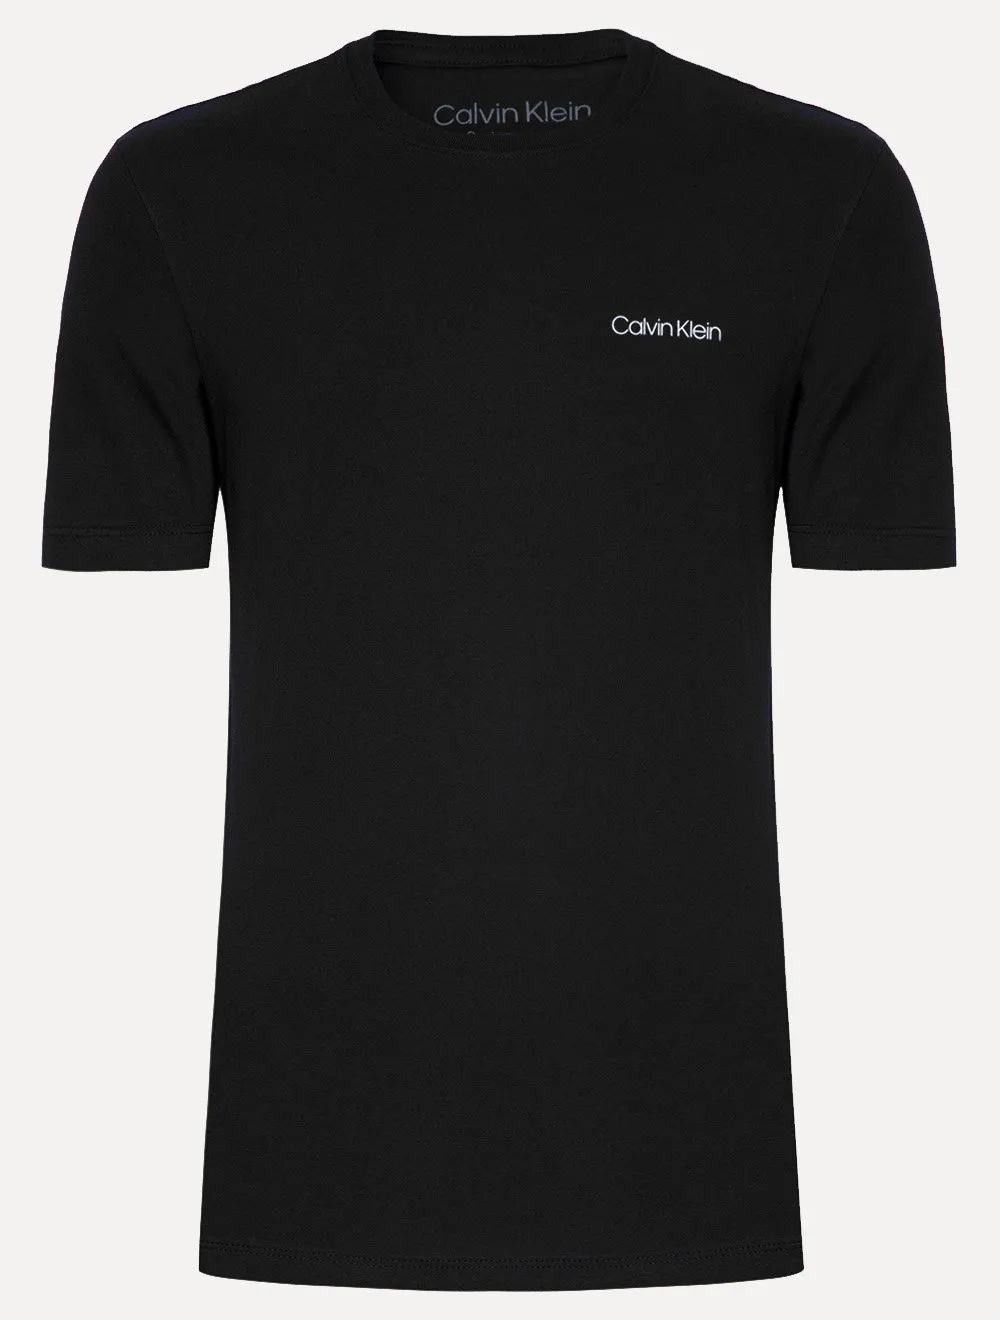 Camiseta Calvin Klein Swimwear Masculina C-Neck Logo Preta